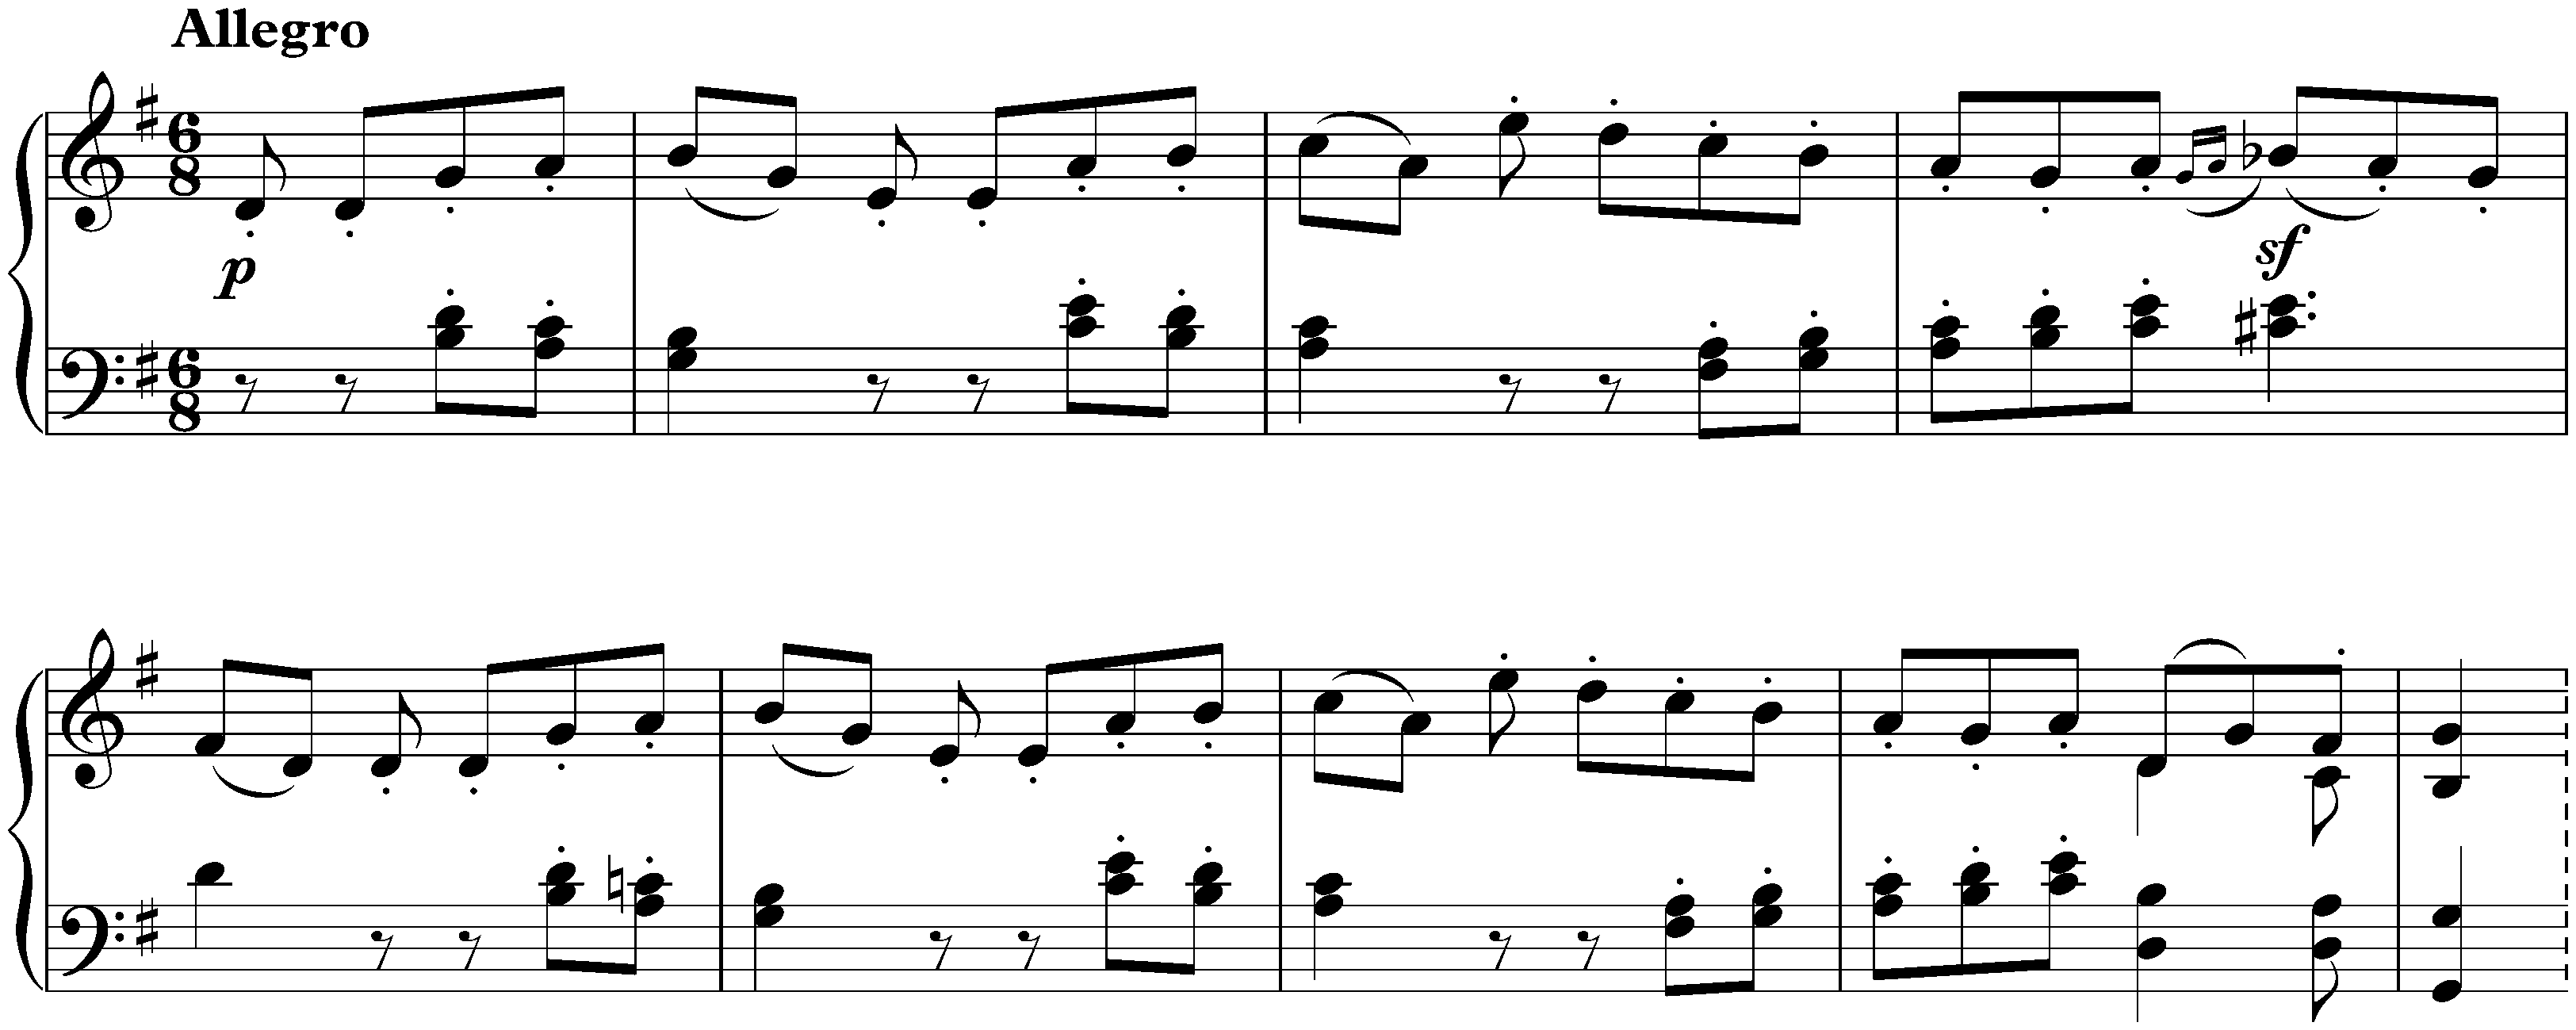 Sonata no. 19 in G minor, op. 49 no. 1; 2. Rondo: Allegro